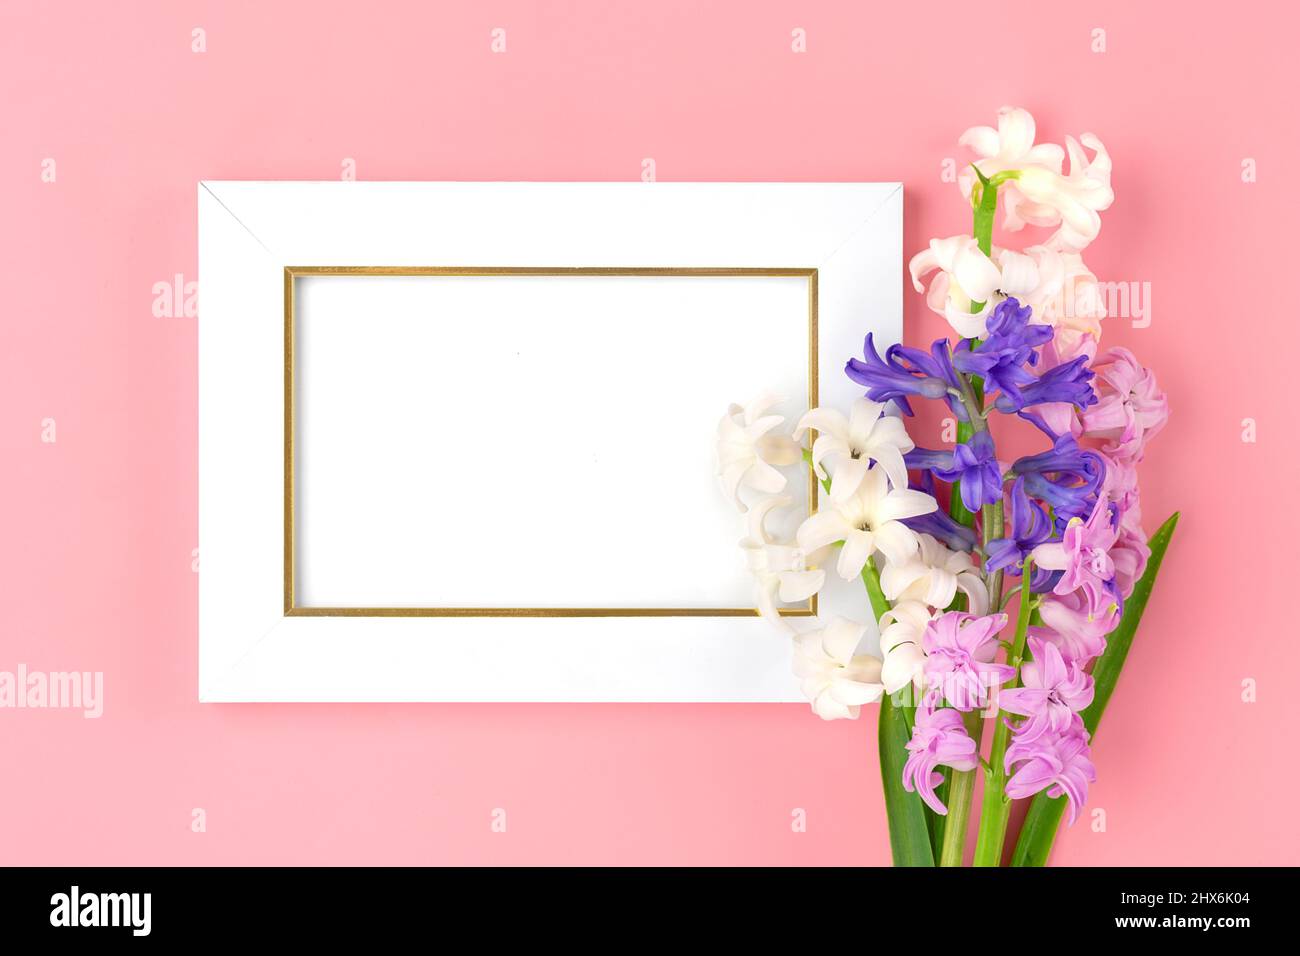 Blumenstrauß von Frühlingsblumen aus lila Hyazinthen auf rosa Hintergrund Draufsicht Flat Lay Holiday Card Hallo Frühlingskonzept. Stockfoto